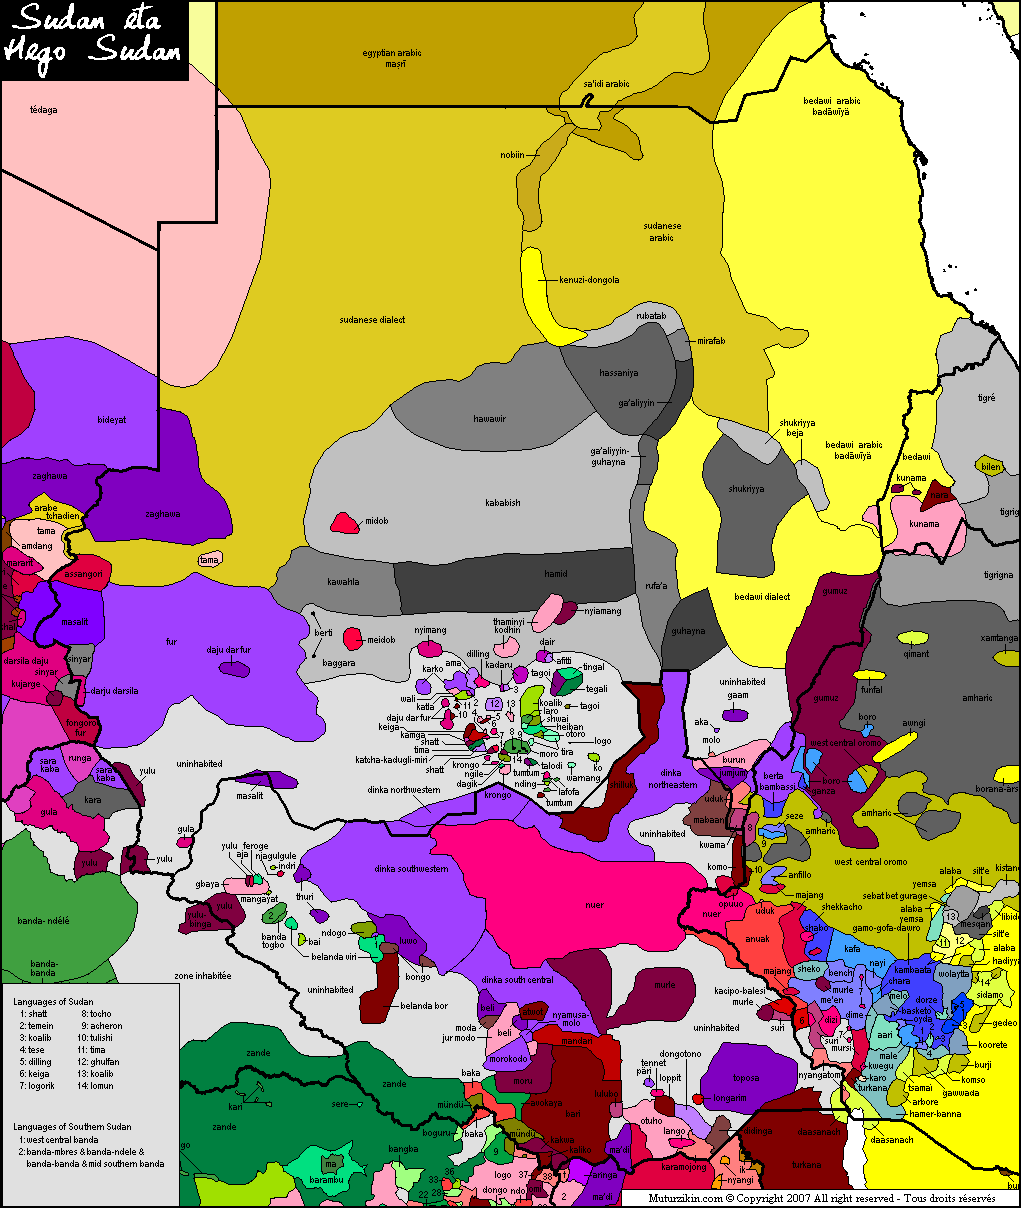 Sudan & Southern Sudan - Linguistic map